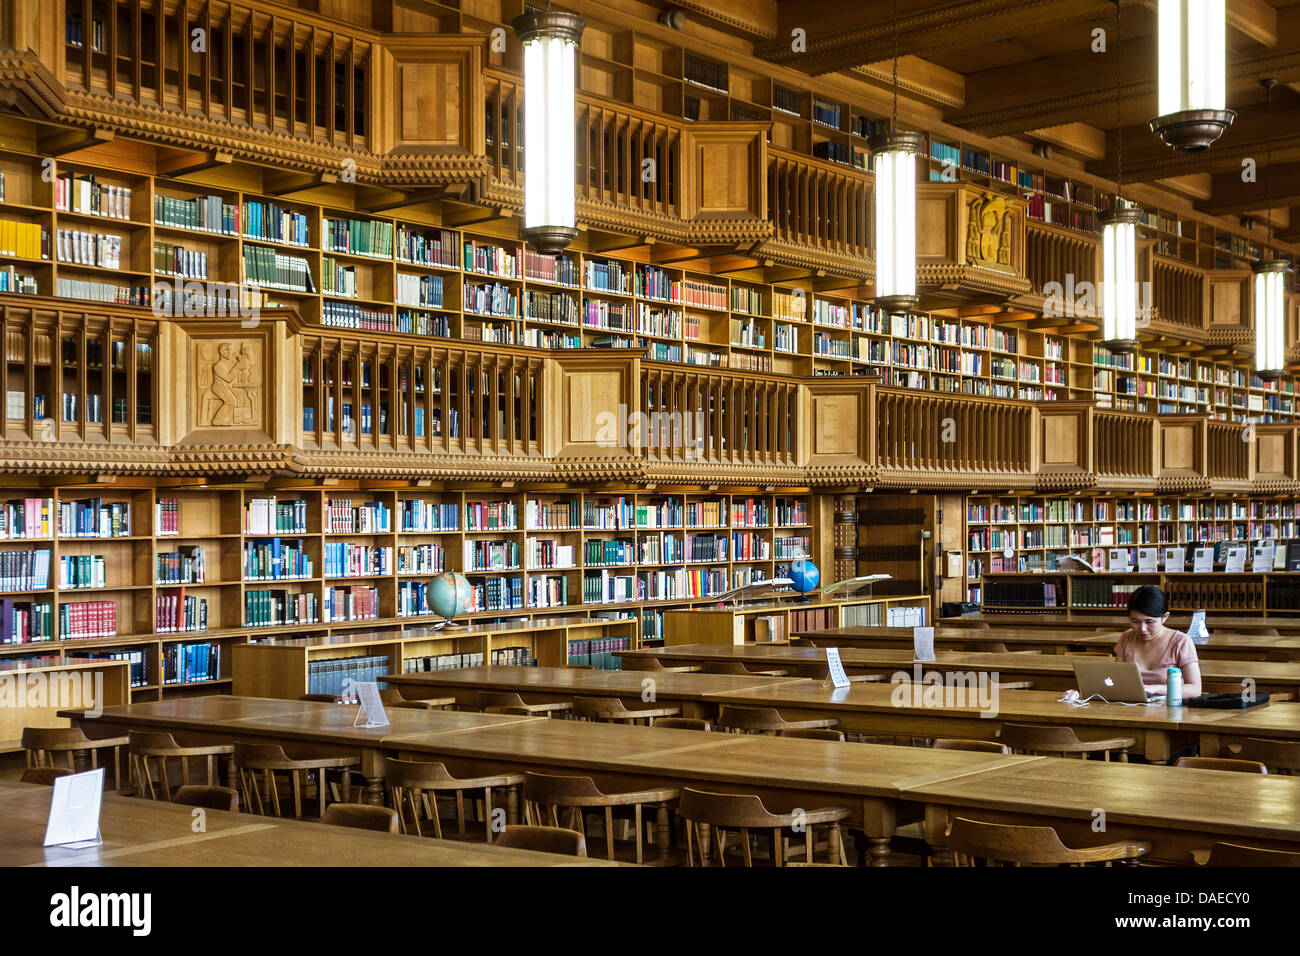 Innenraum zeigt große Bücherregale mit einer Sammlung von Büchern in der Universitätsbibliothek von Leuven / Louvain, Belgien Stockfoto